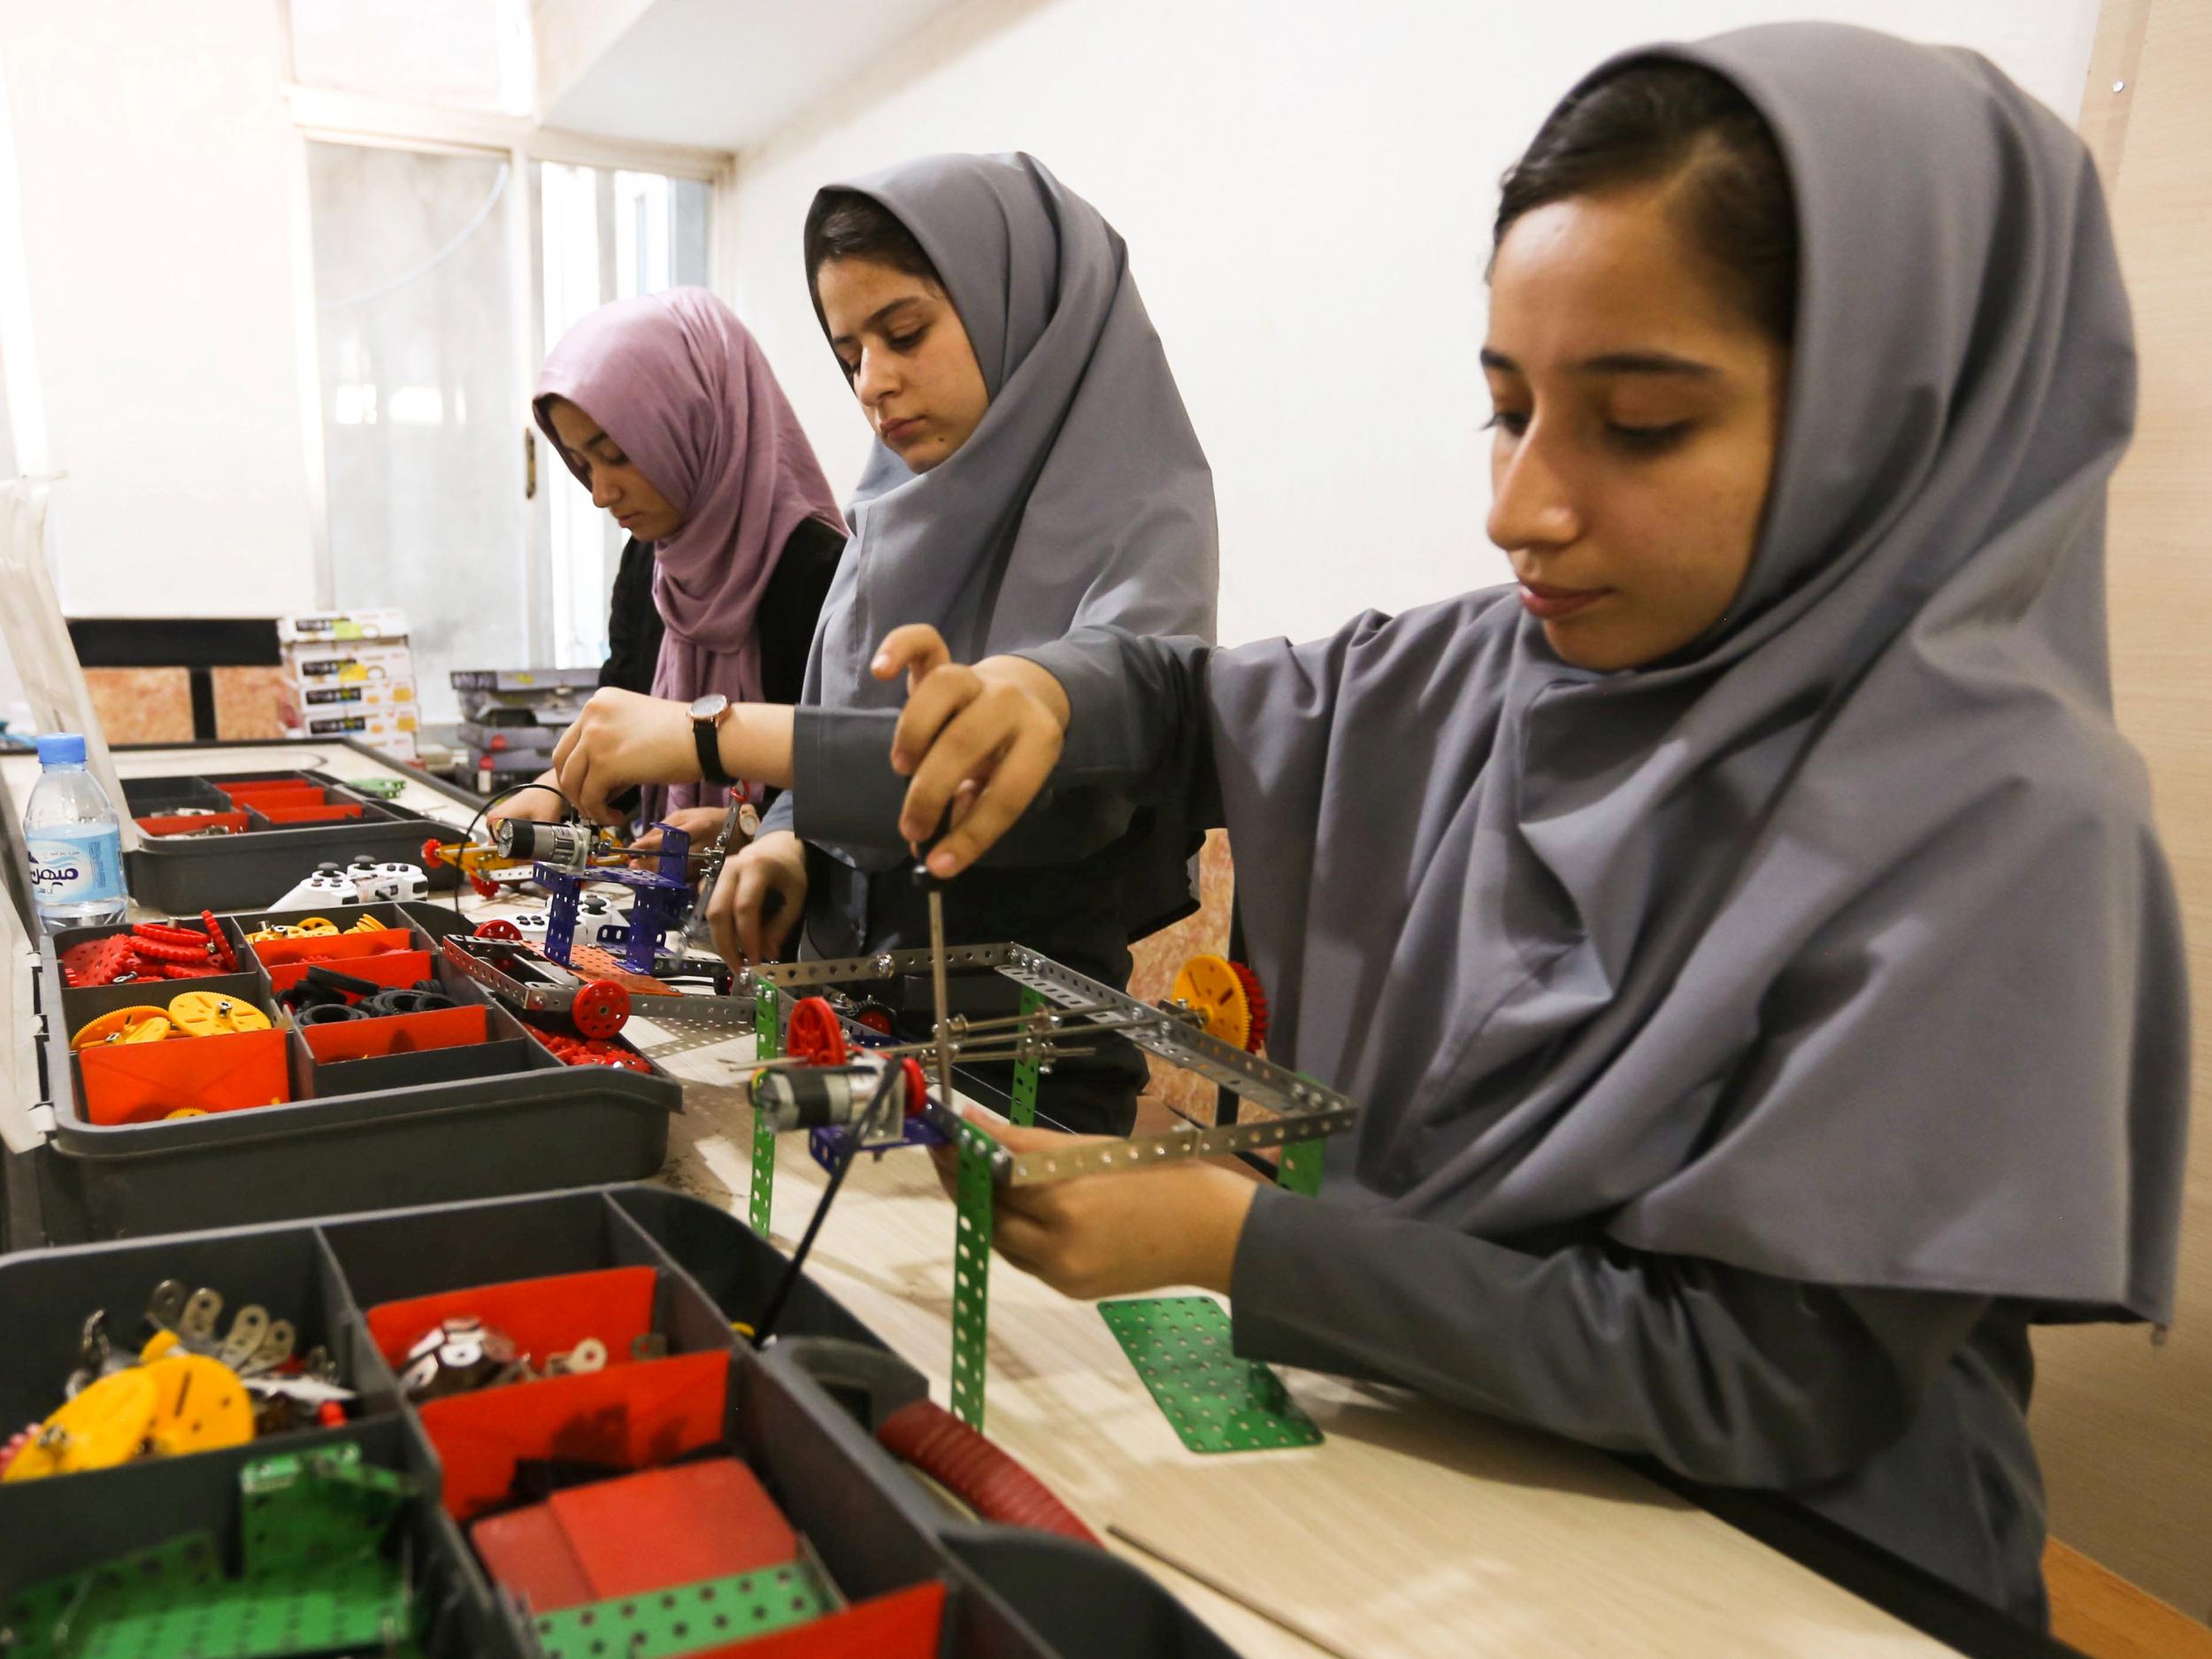 Members of Afghanistan's girls' robotics team work on their machines in Herat, Afghanistan